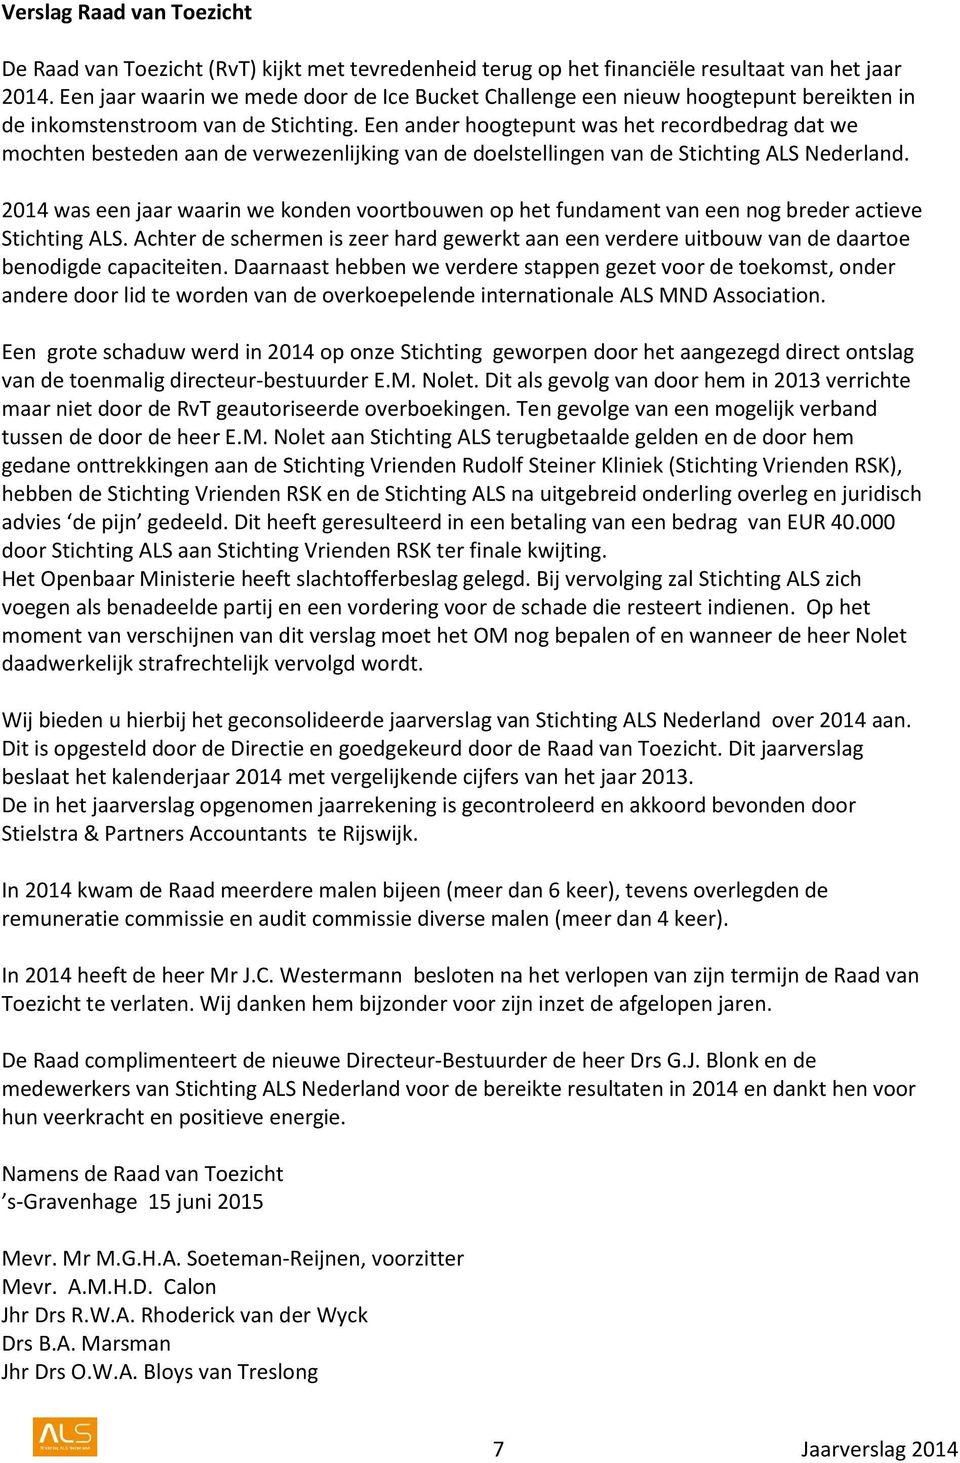 Een ander hoogtepunt was het recordbedrag dat we mochten besteden aan de verwezenlijking van de doelstellingen van de Stichting ALS Nederland.